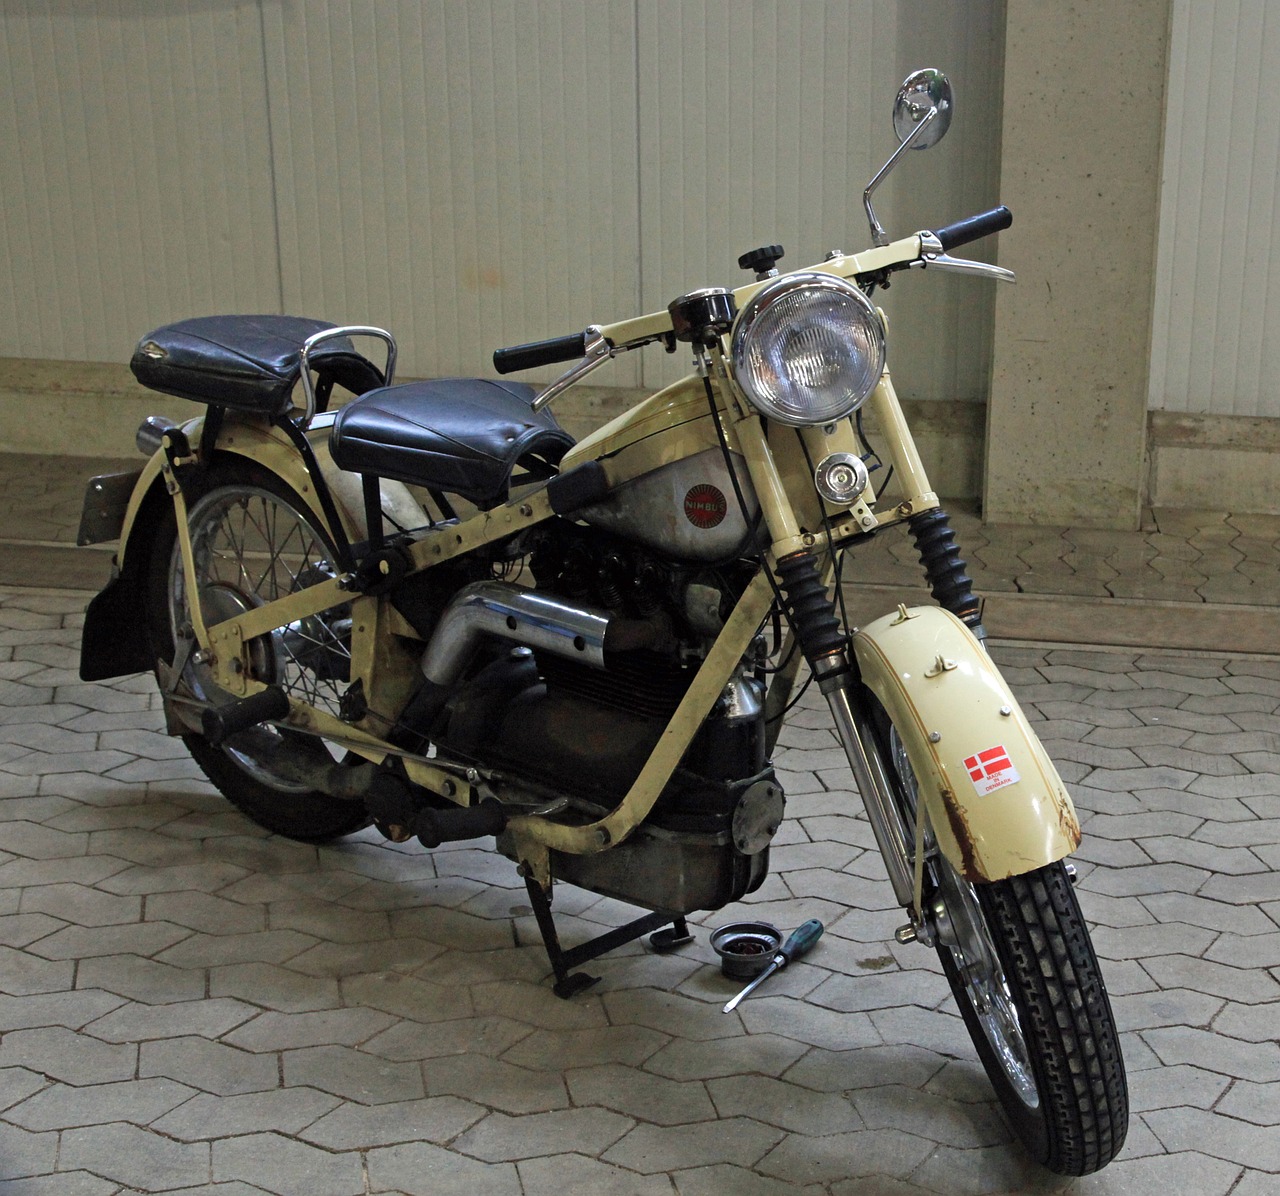 oldtimer motorcycle nimbus free photo